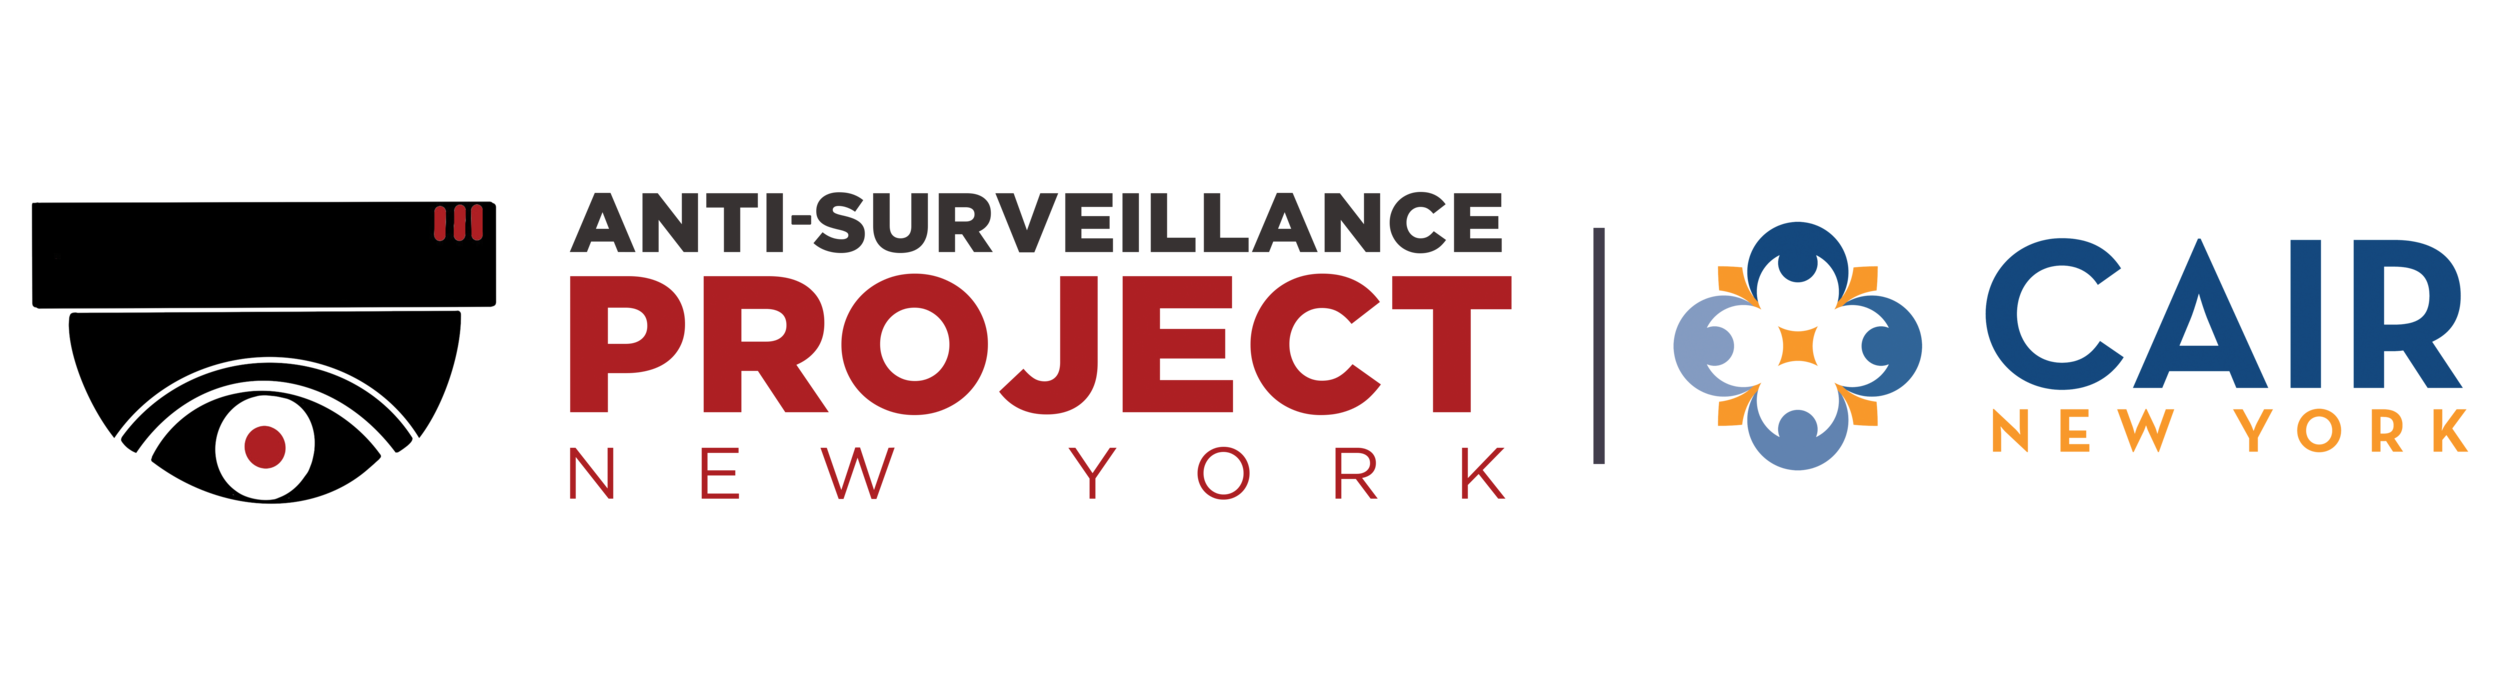 Anti-Surveillance Project-NY